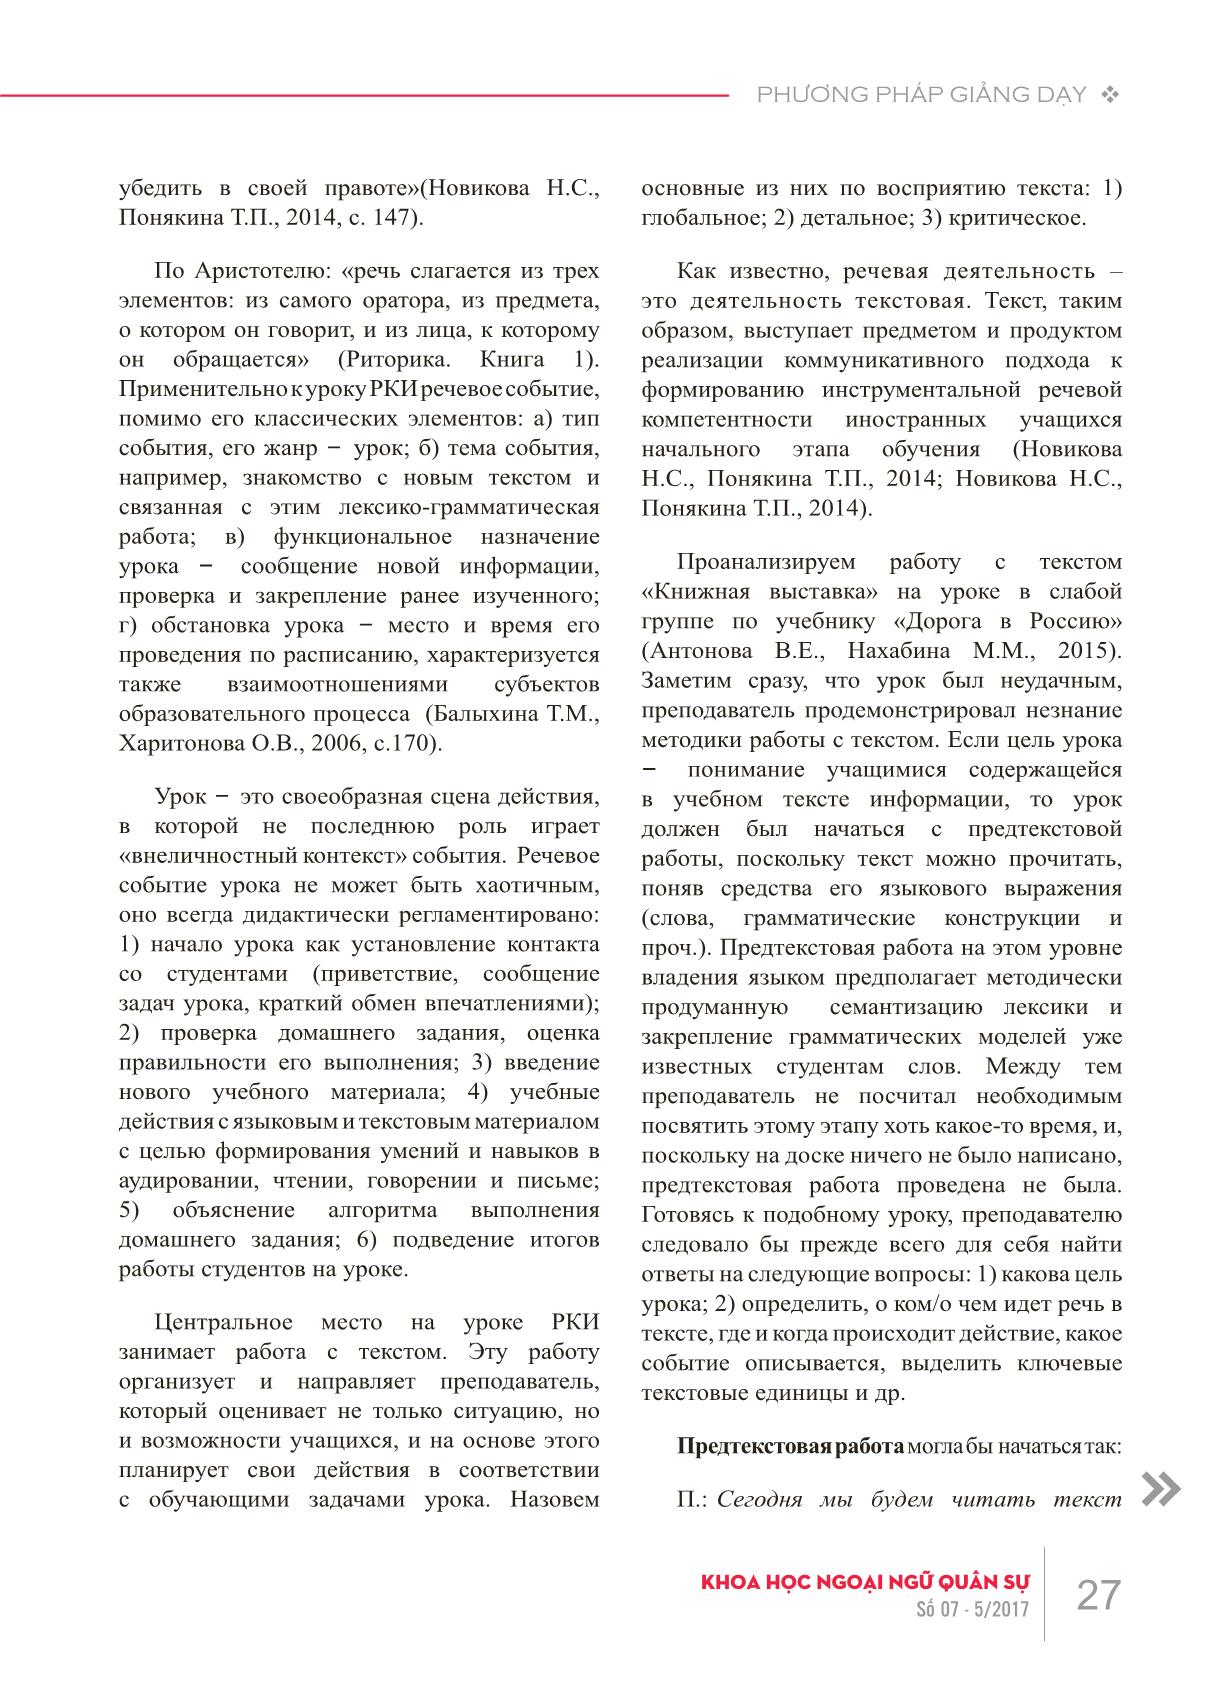 Các lỗi về phương pháp giảng dạy khi xử lý văn bản trong giờ dạy tiếng Nga như một ngoại ngữ trang 2